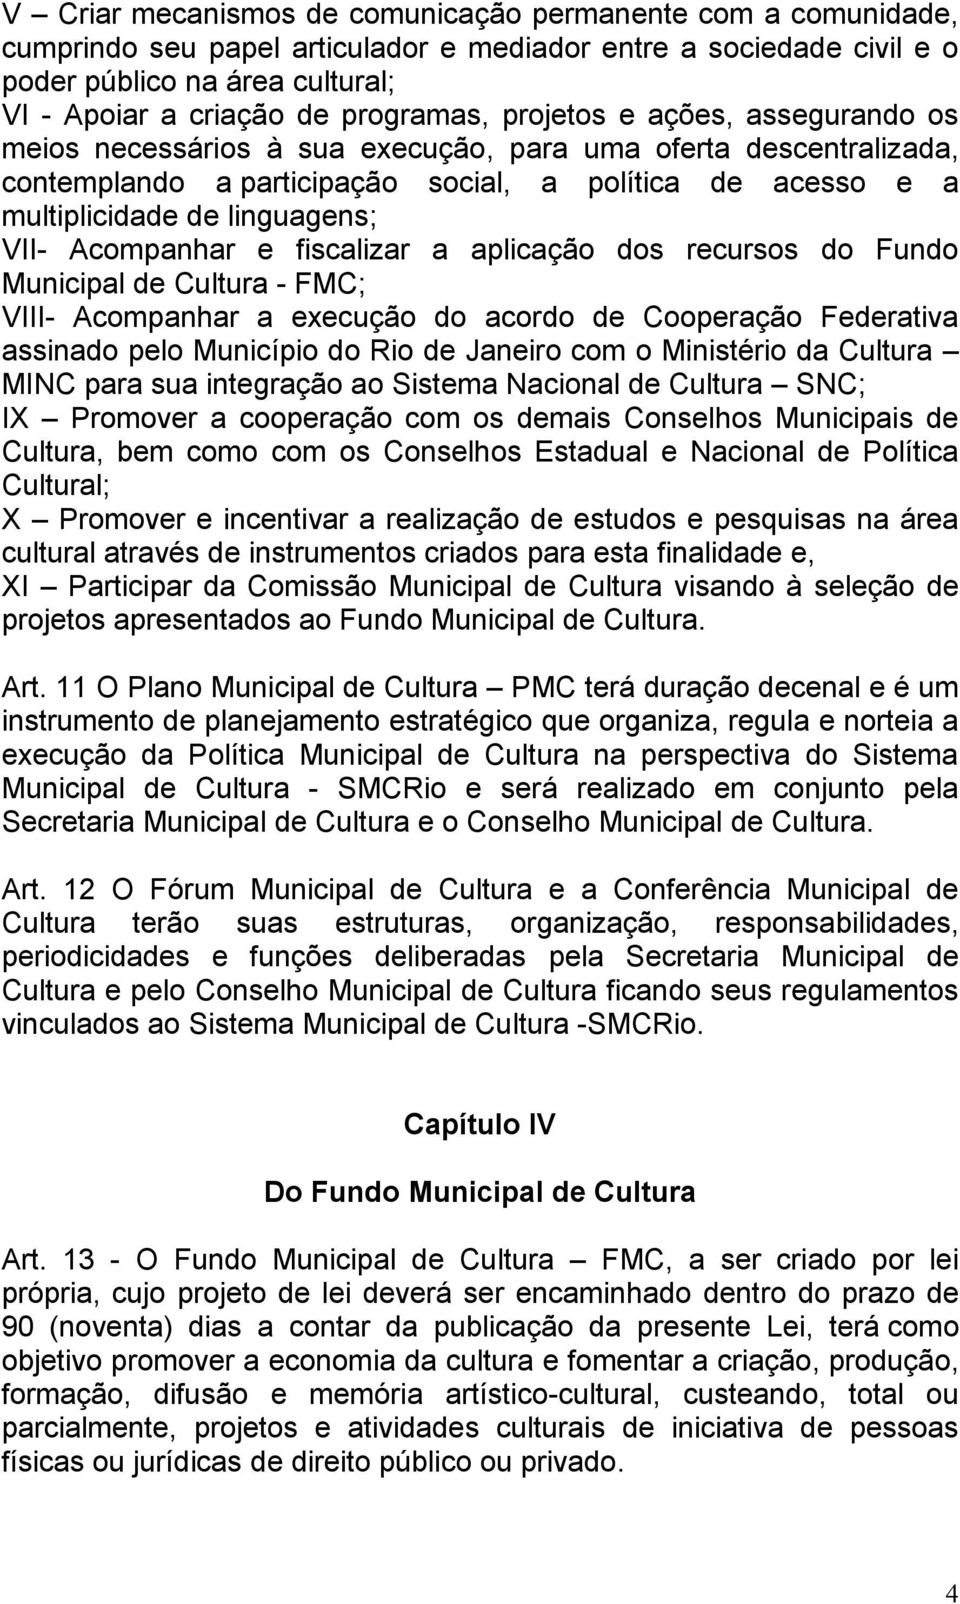 linguagens; VII- Acompanhar e fiscalizar a aplicação dos recursos do Fundo Municipal de Cultura - FMC; VIII- Acompanhar a execução do acordo de Cooperação Federativa assinado pelo Município do Rio de